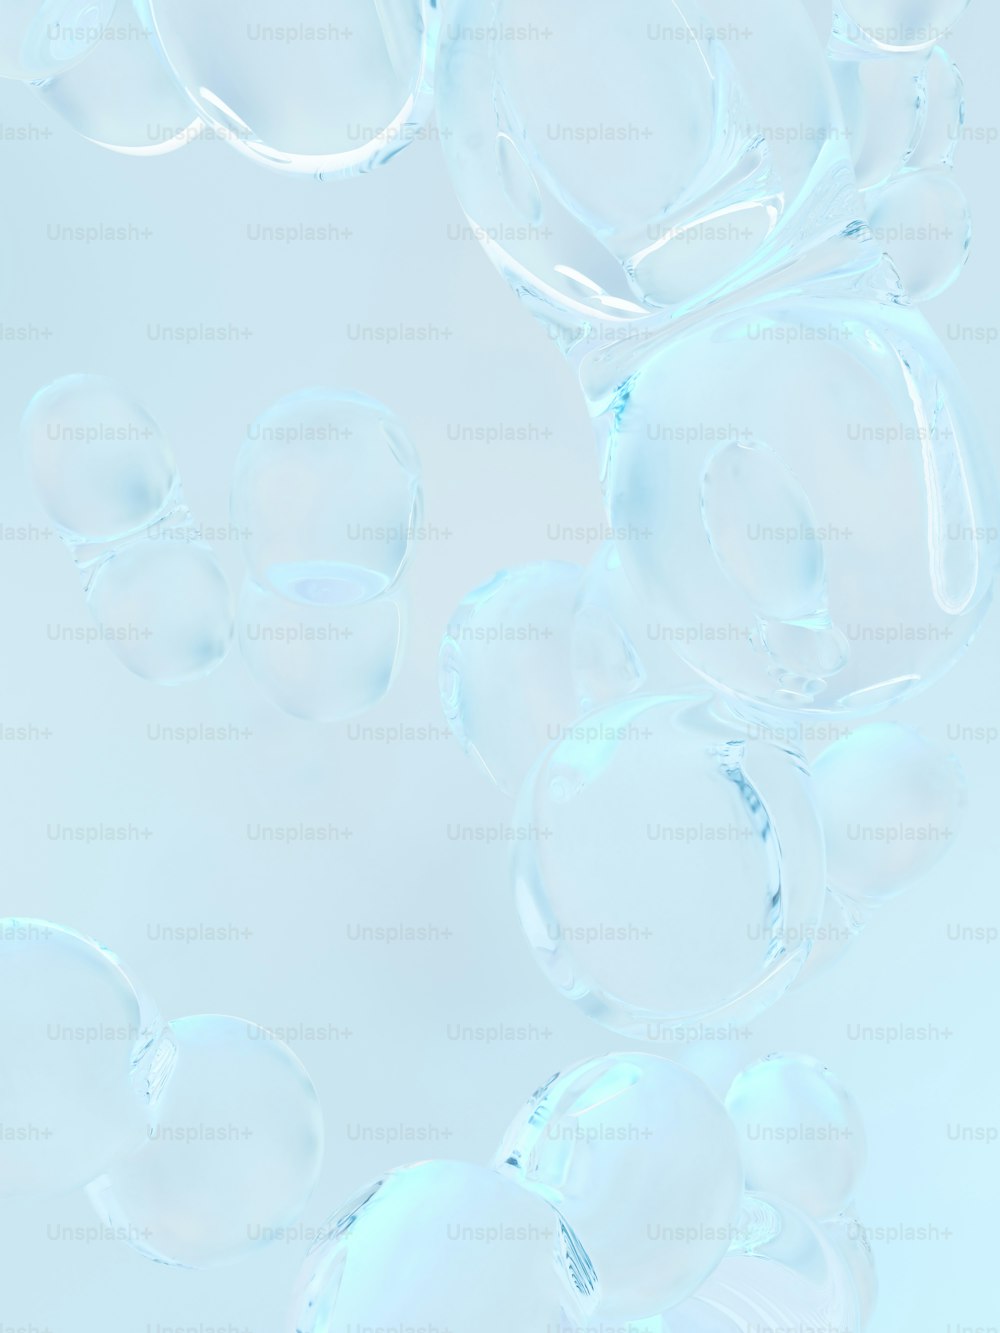 Un gruppo di bolle che fluttuano nell'aria